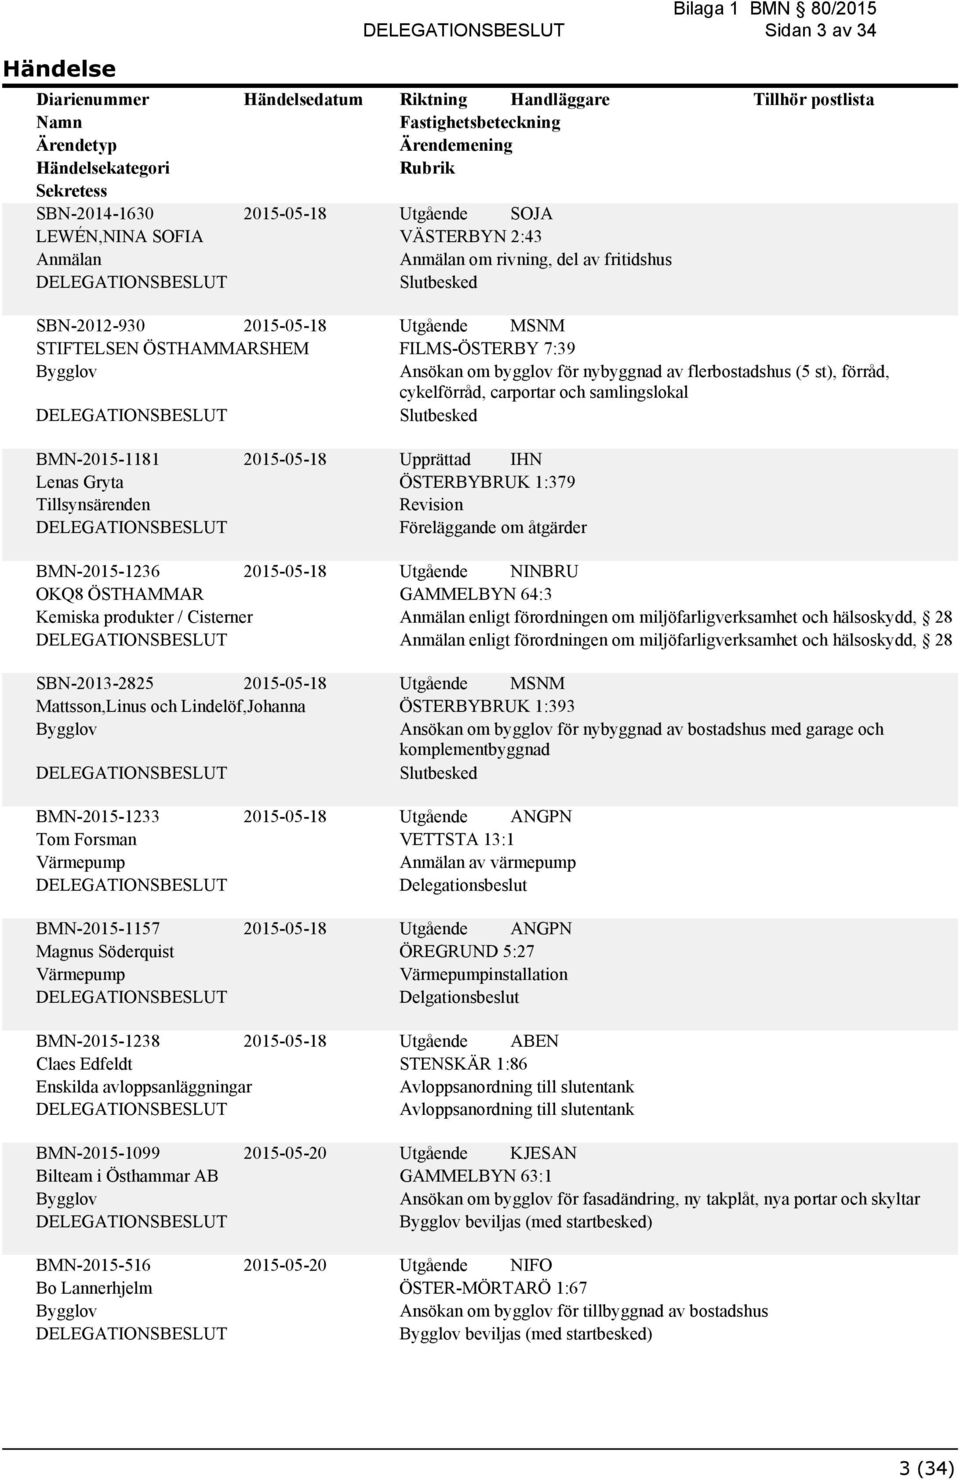 åtgärder BMN-2015-1236 2015-05-18 OKQ8 ÖSTHAMMAR Kemiska produkter / Cisterner SBN-2013-2825 2015-05-18 Mattsson,Linus och Lindelöf,Johanna Utgående NINBRU GAMMELBYN 64:3 enligt förordningen om